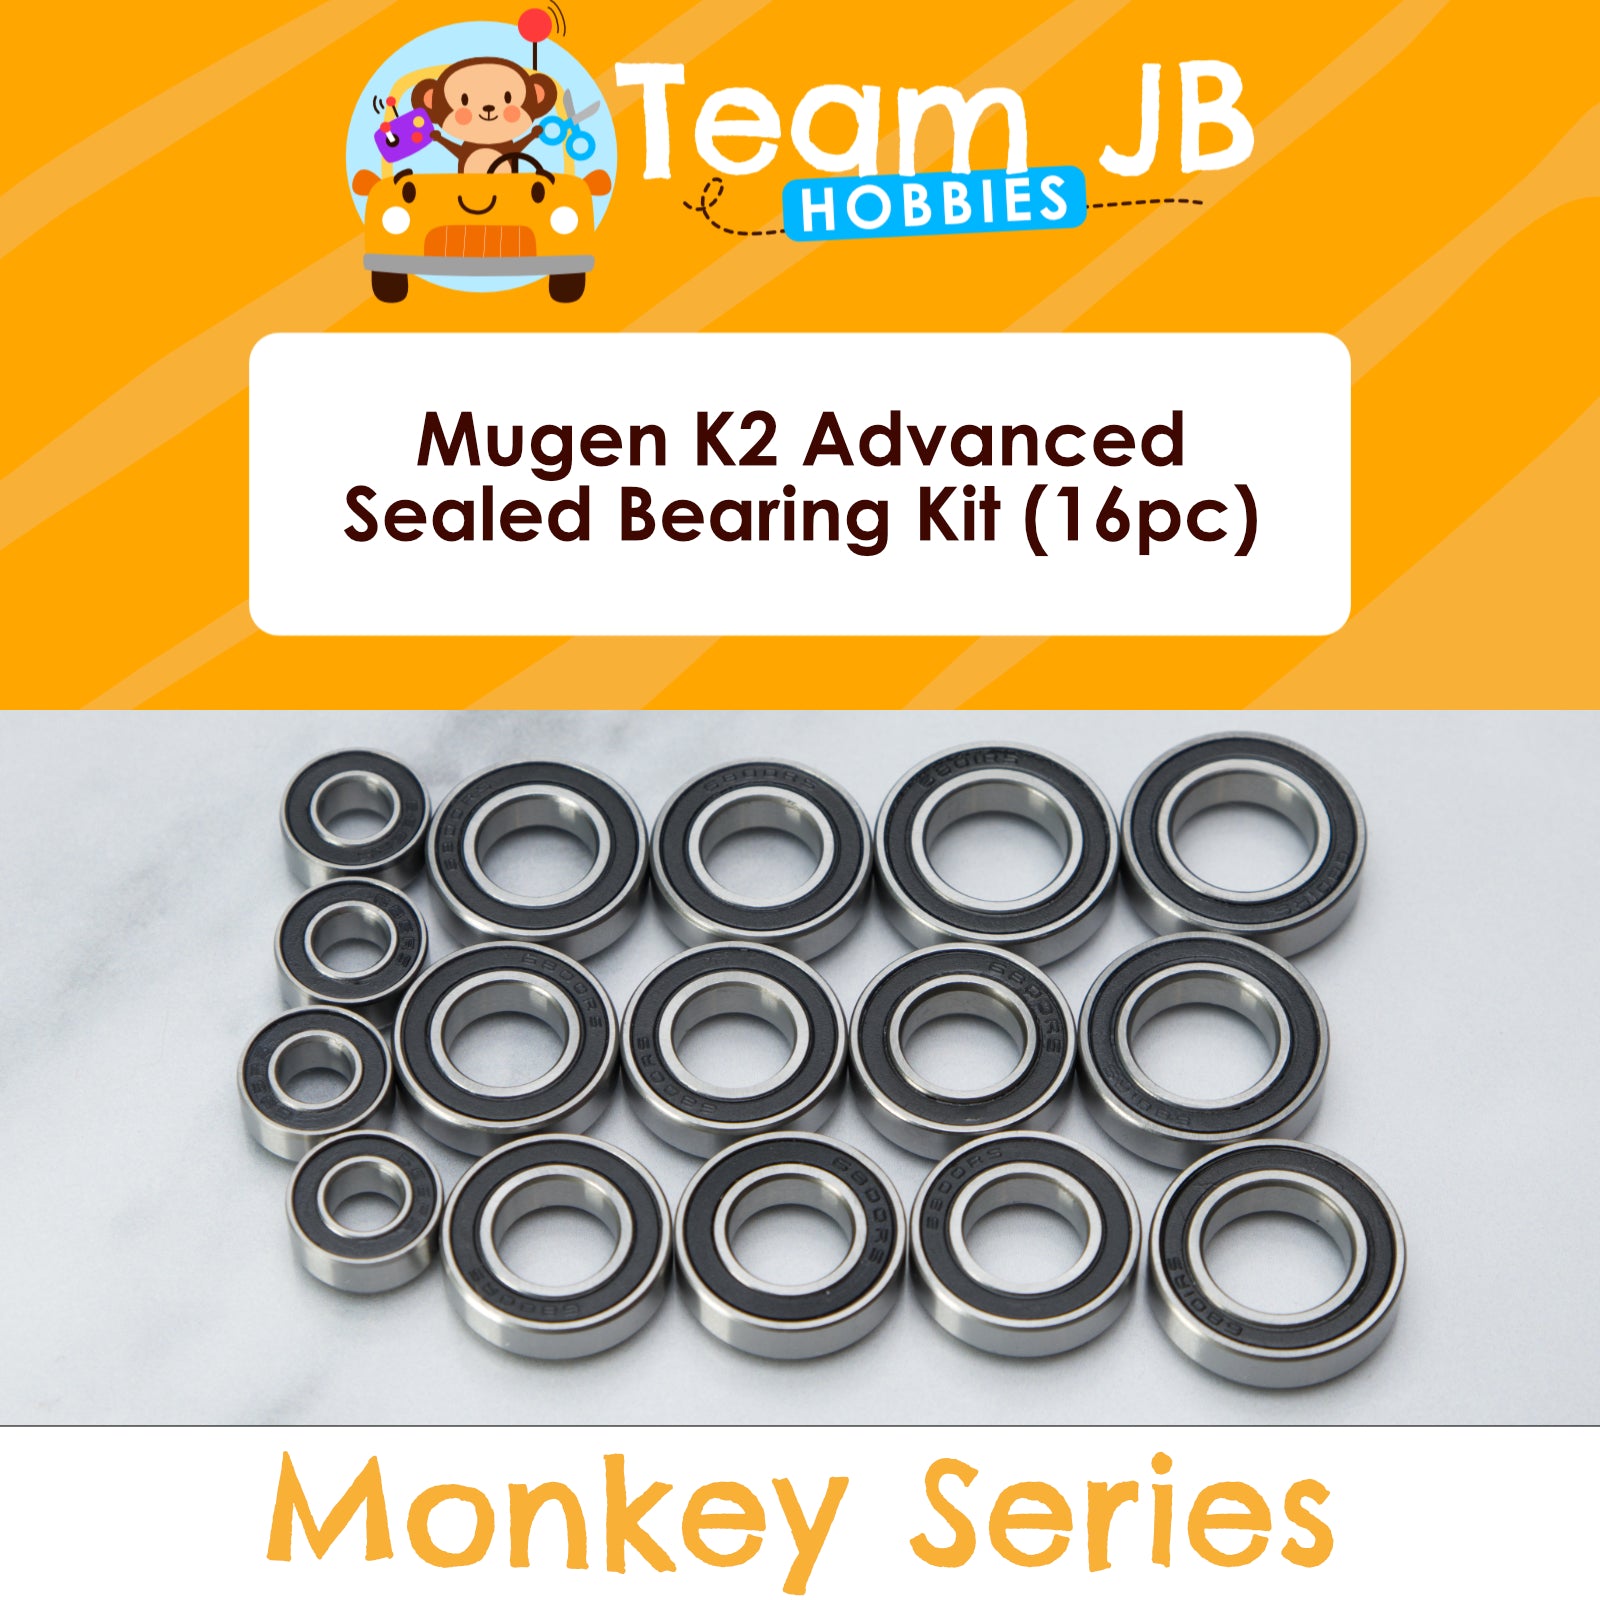 Mugen K2 Advanced - Sealed Bearing Kit